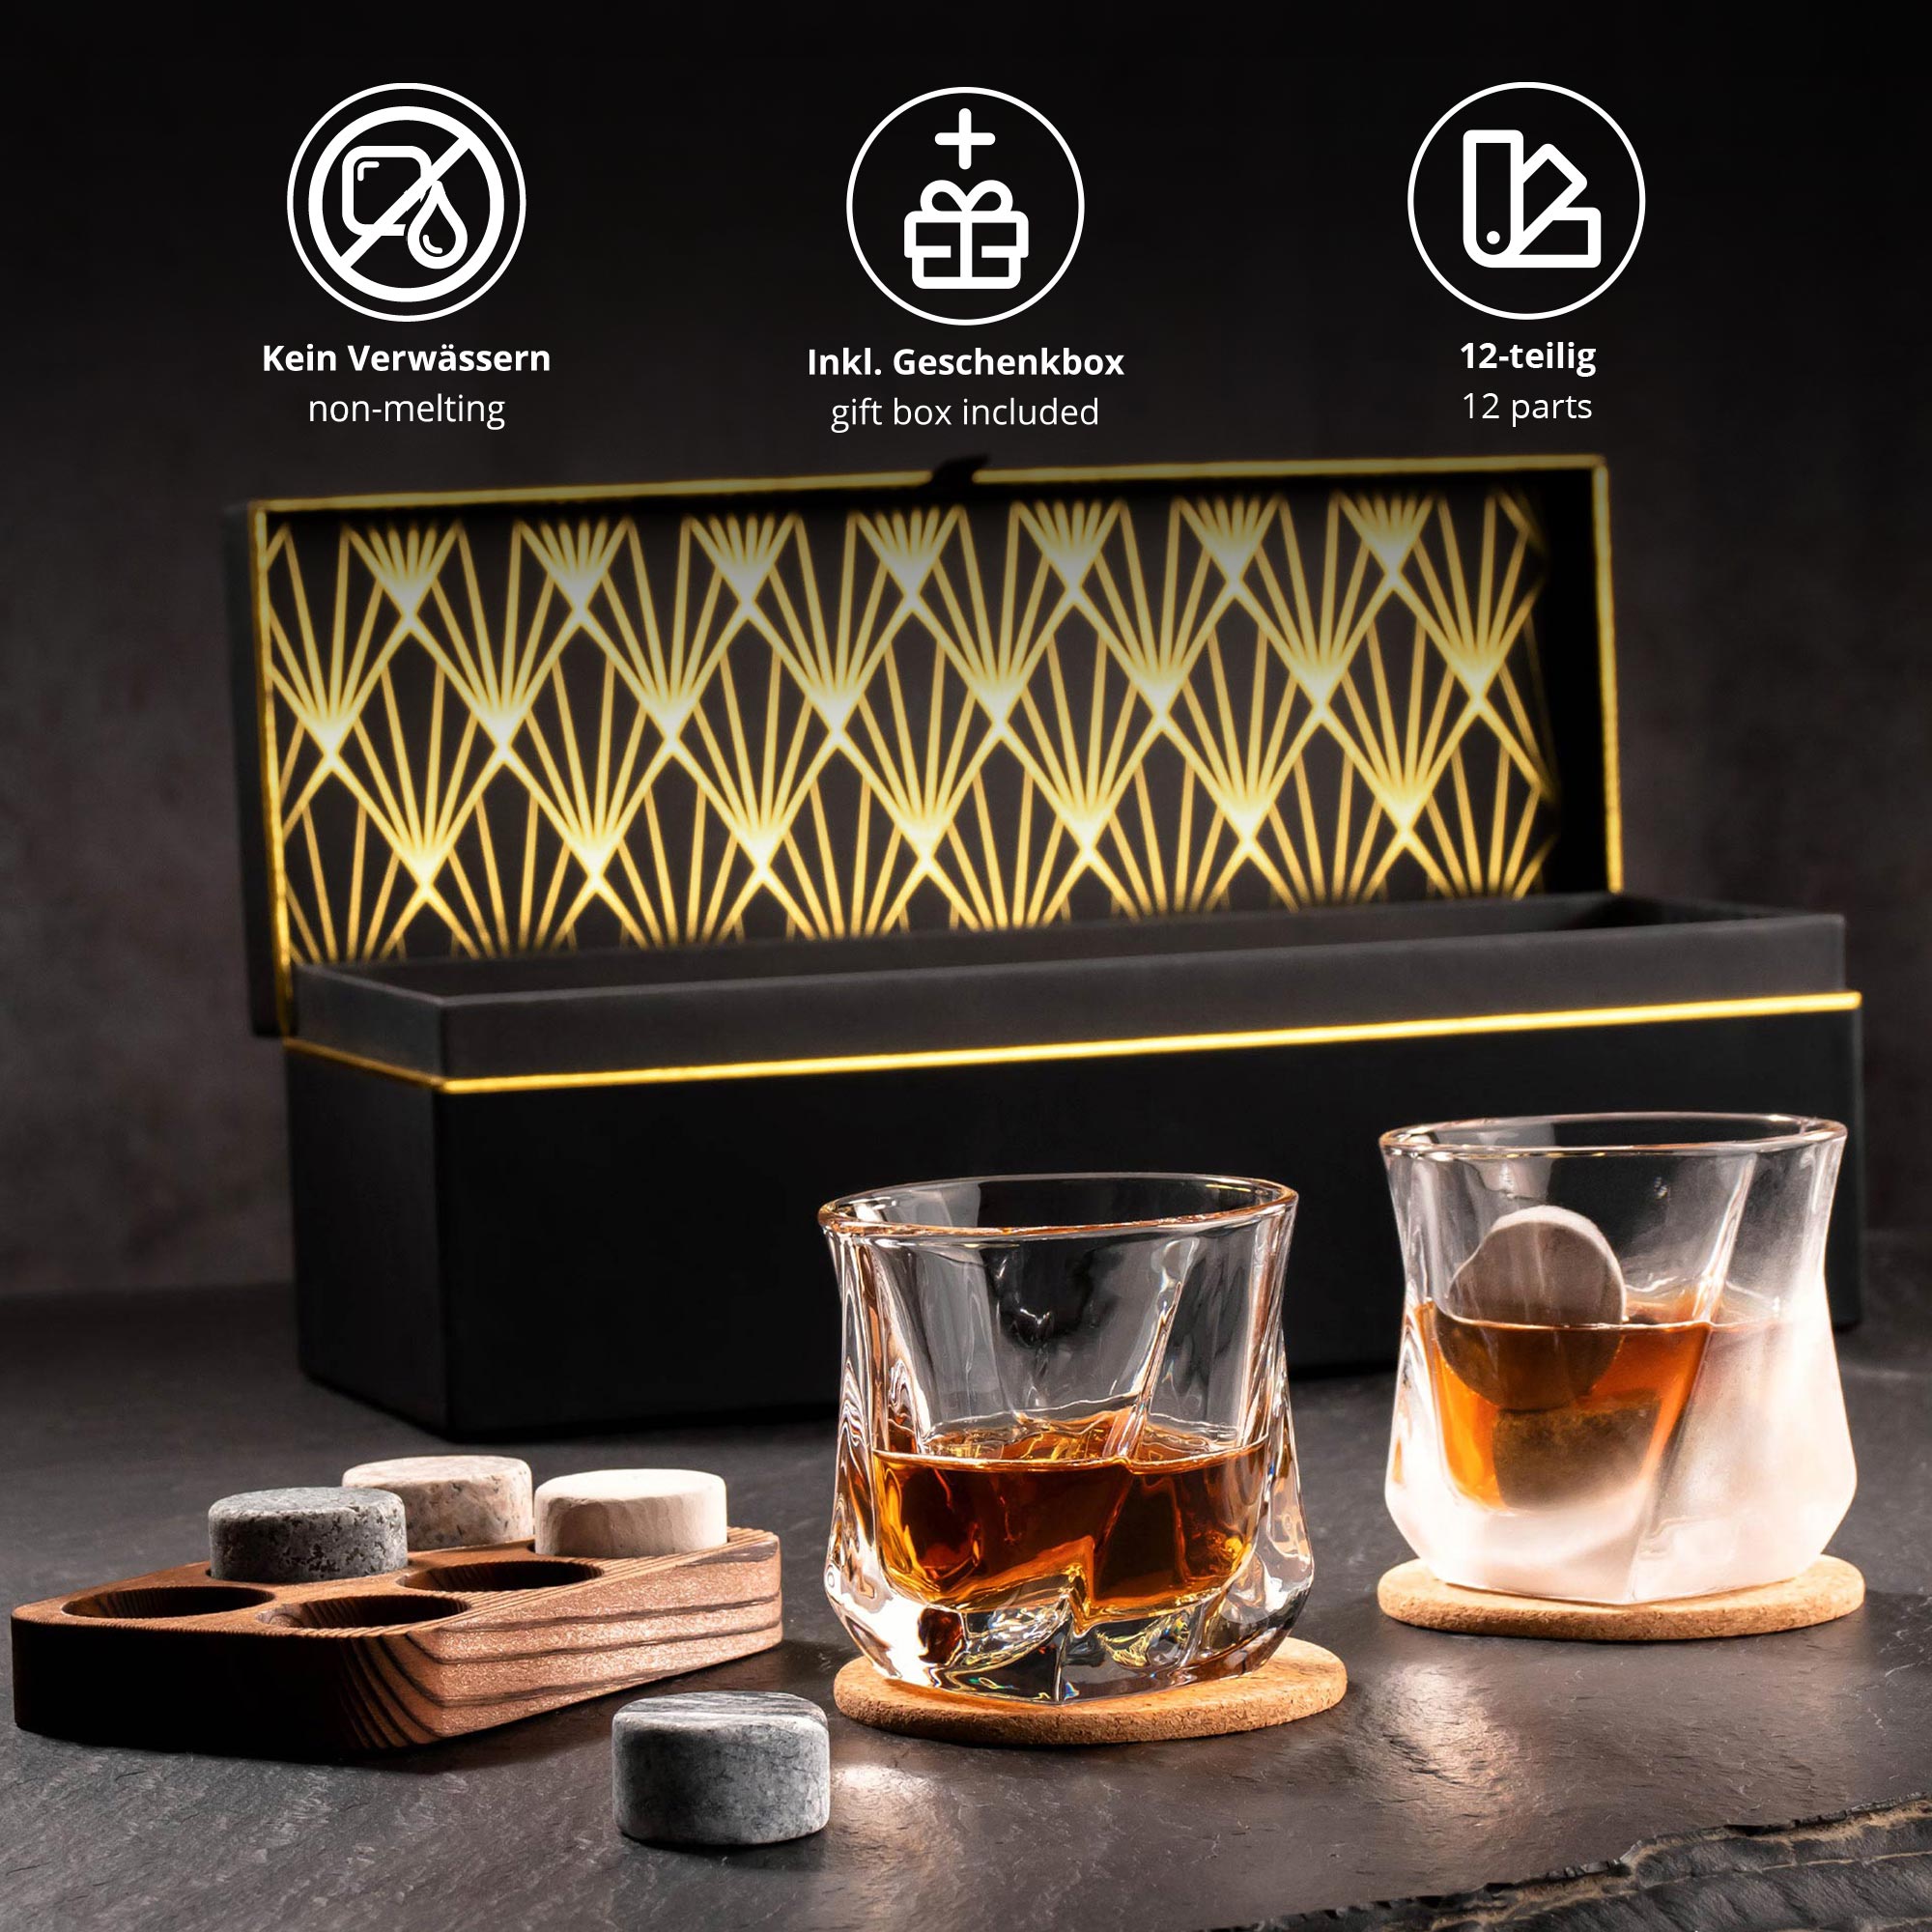 Whisky Set in edler Geschenkbox mit Gravur zum 60. Geburtstag